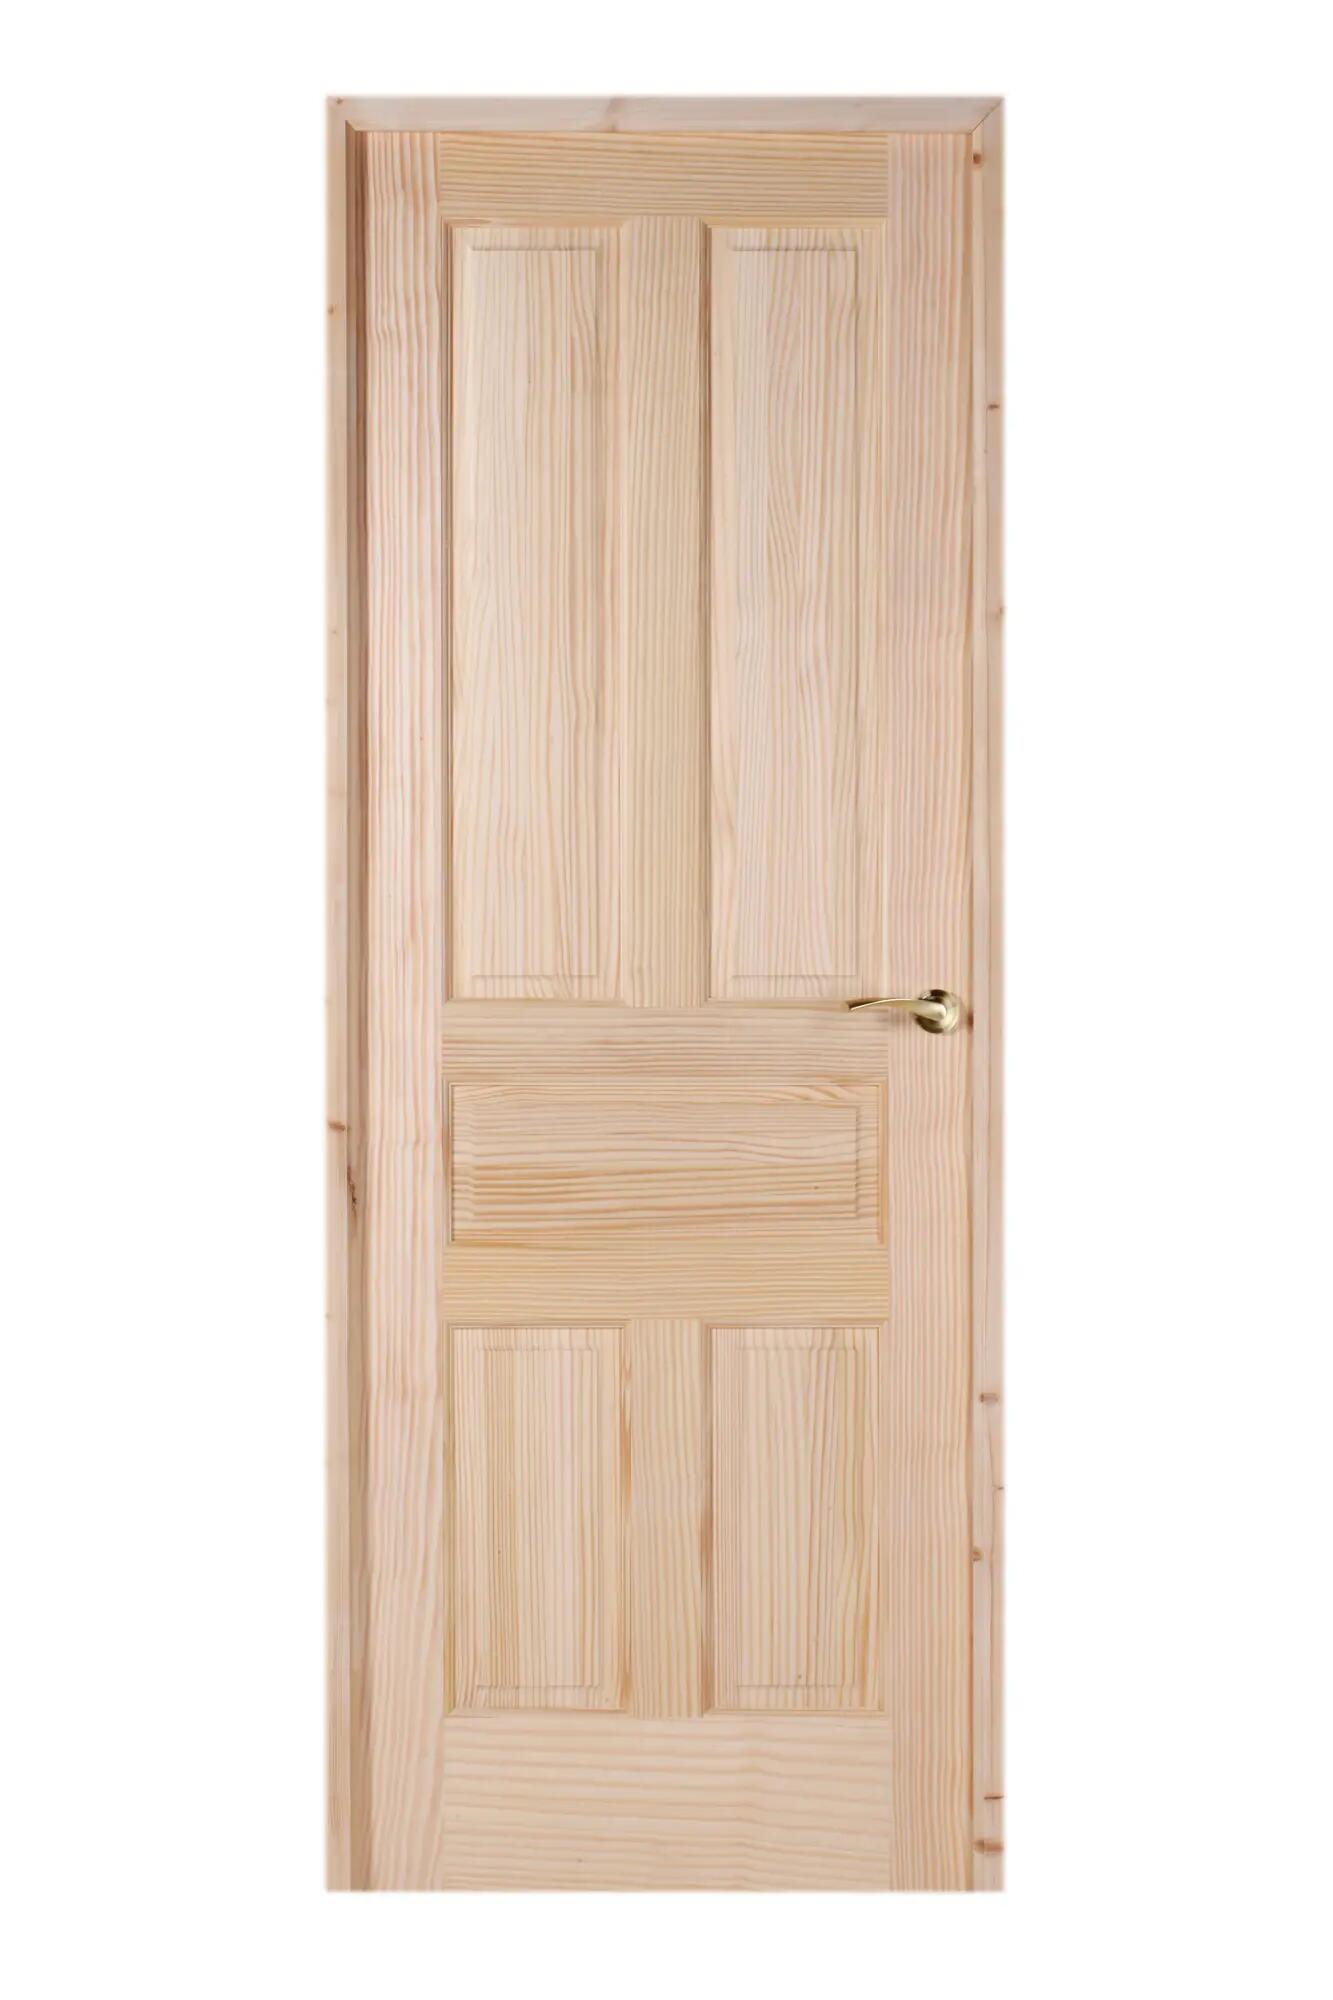 Puerta malaga pino apertura izquierda 70x50 62.5cm